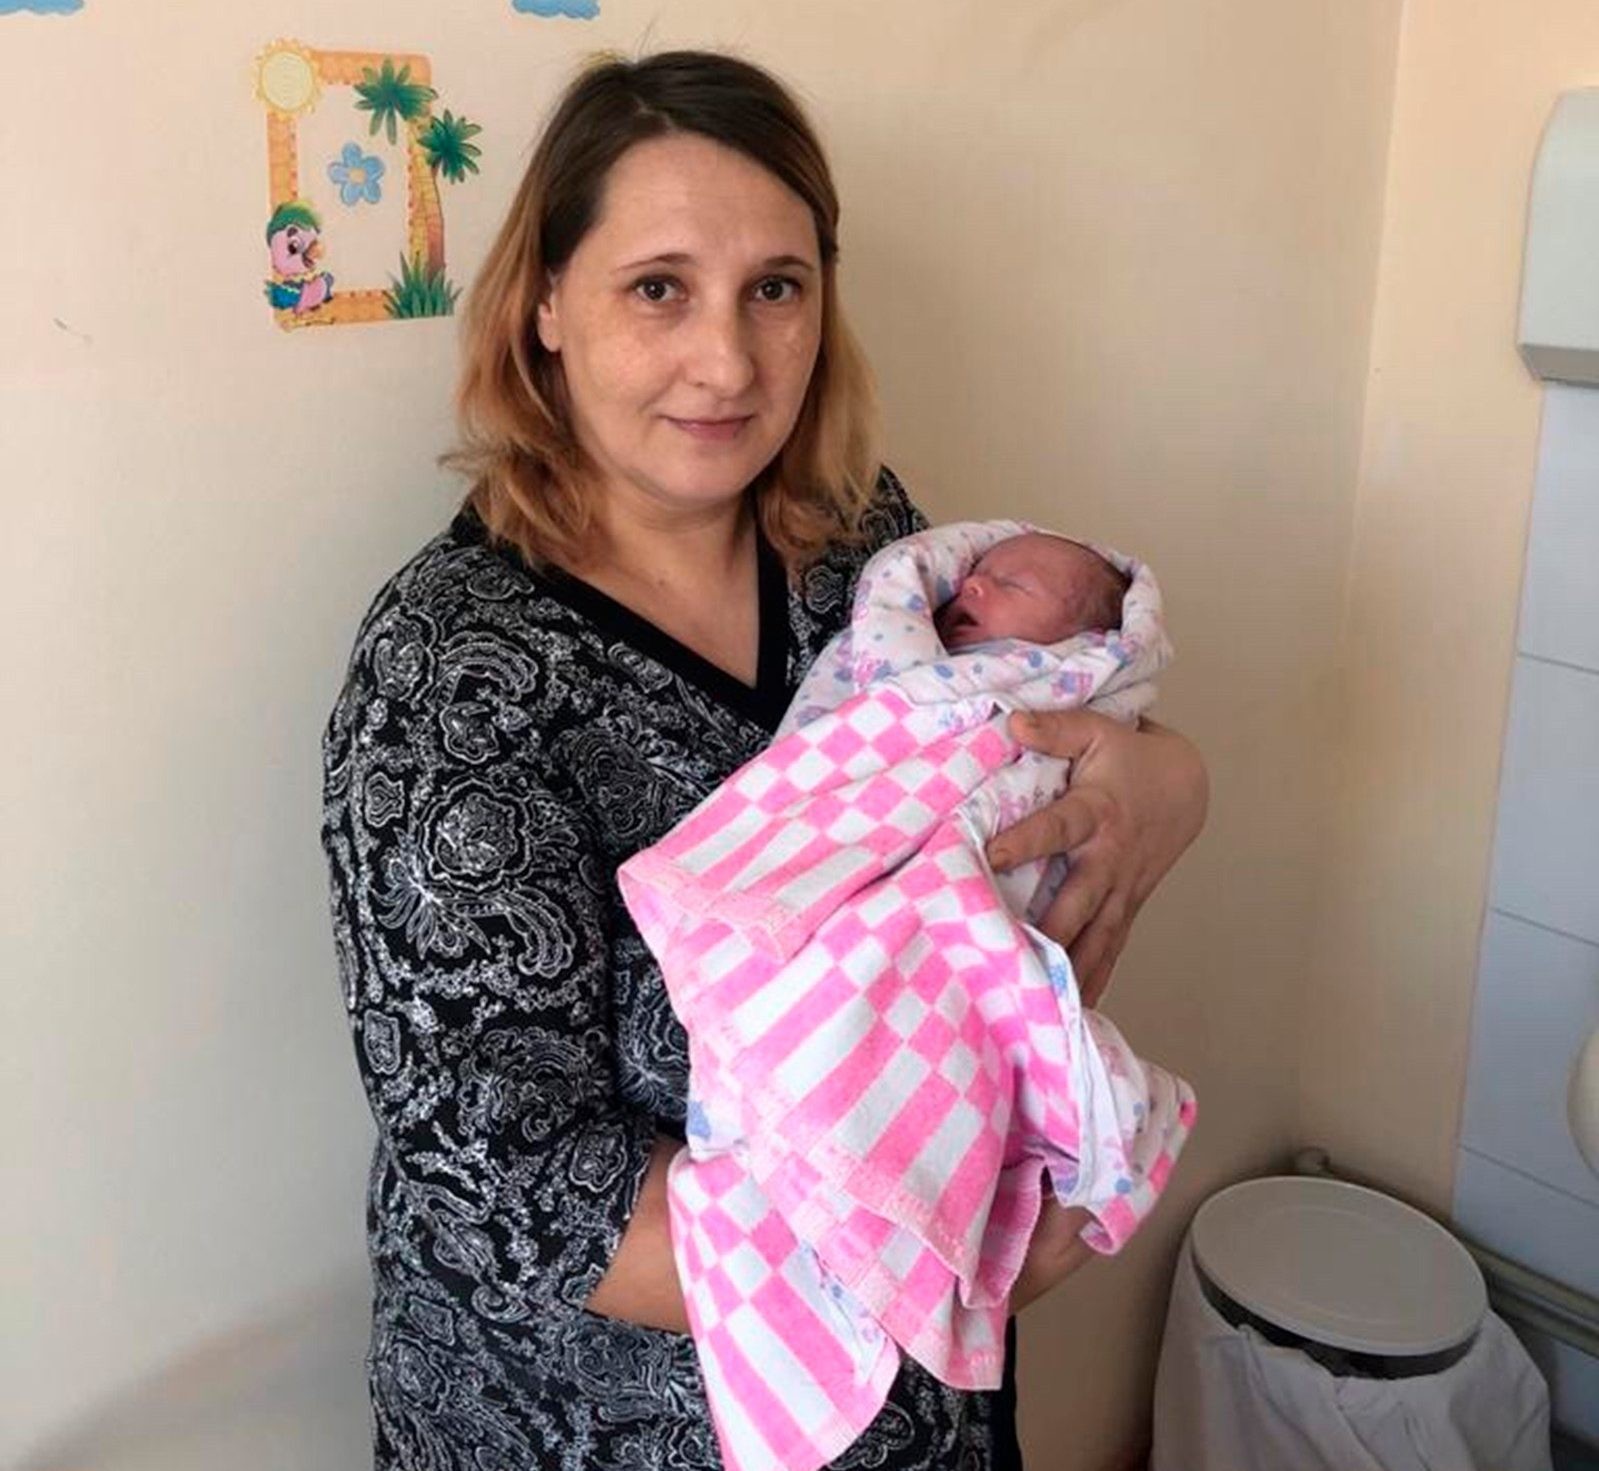 Evgenia e Anastasia, o bebê milagre (Foto: Reprodução/ 7News )